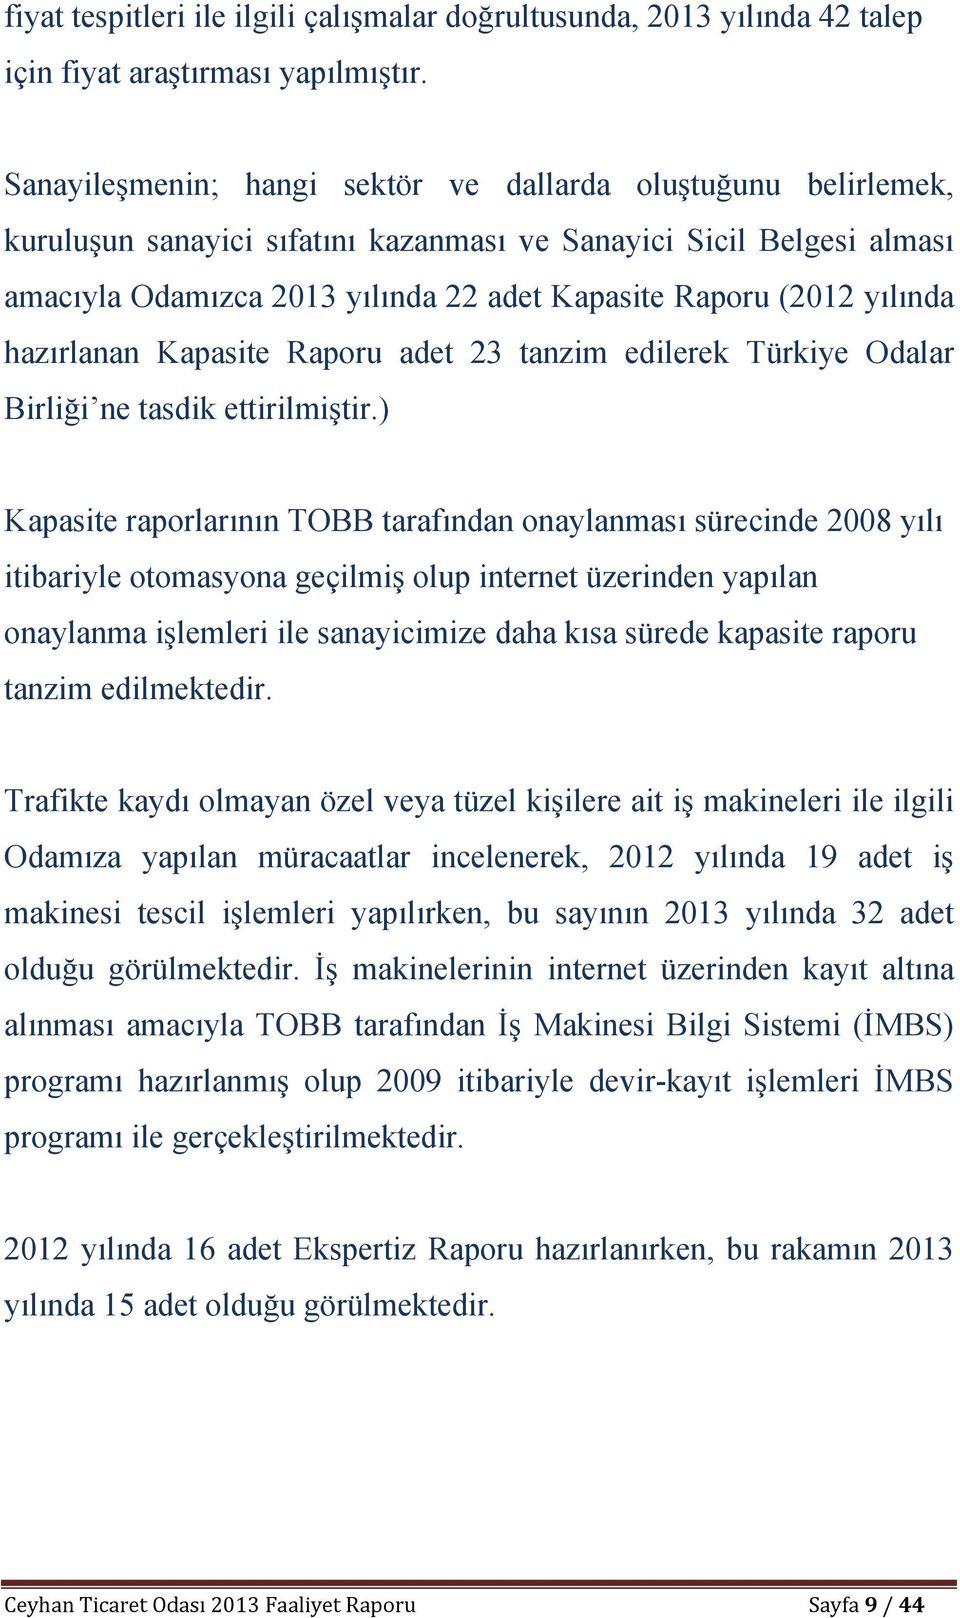 yılında hazırlanan Kapasite Raporu adet 23 tanzim edilerek Türkiye Odalar Birliği ne tasdik ettirilmiştir.